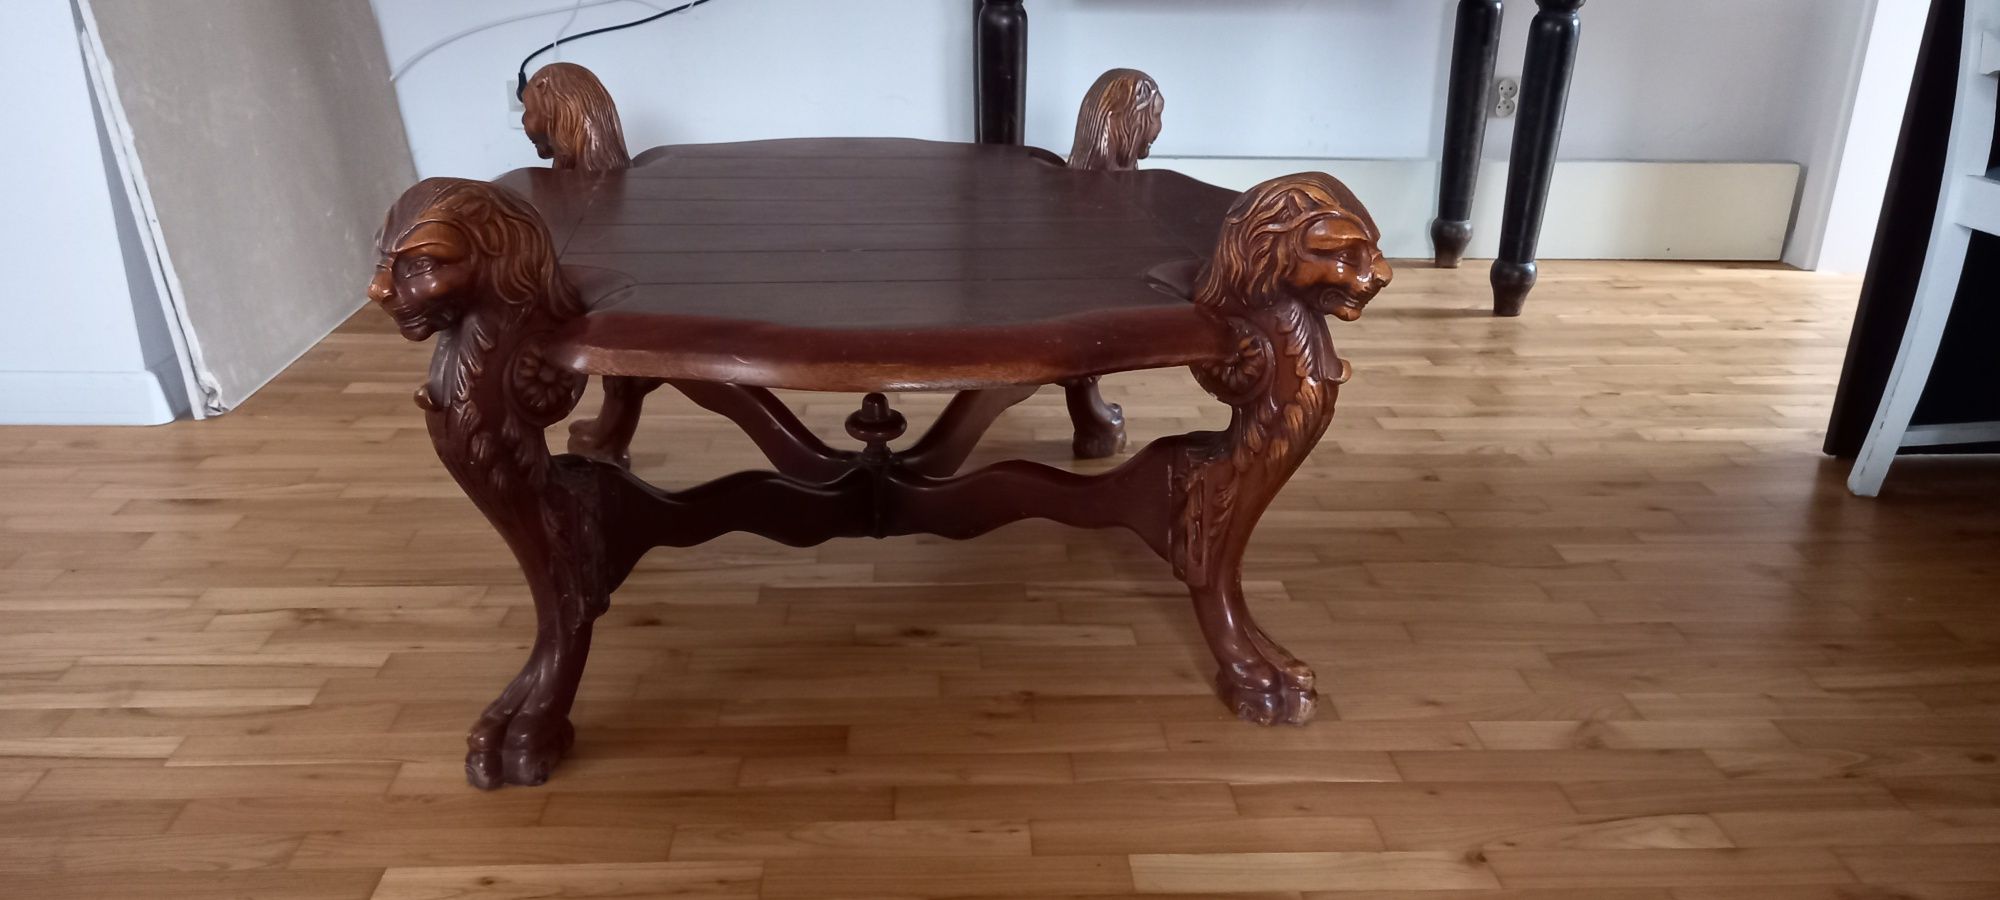 Duży stolik kawowy rzeźbiony - 4 lwy